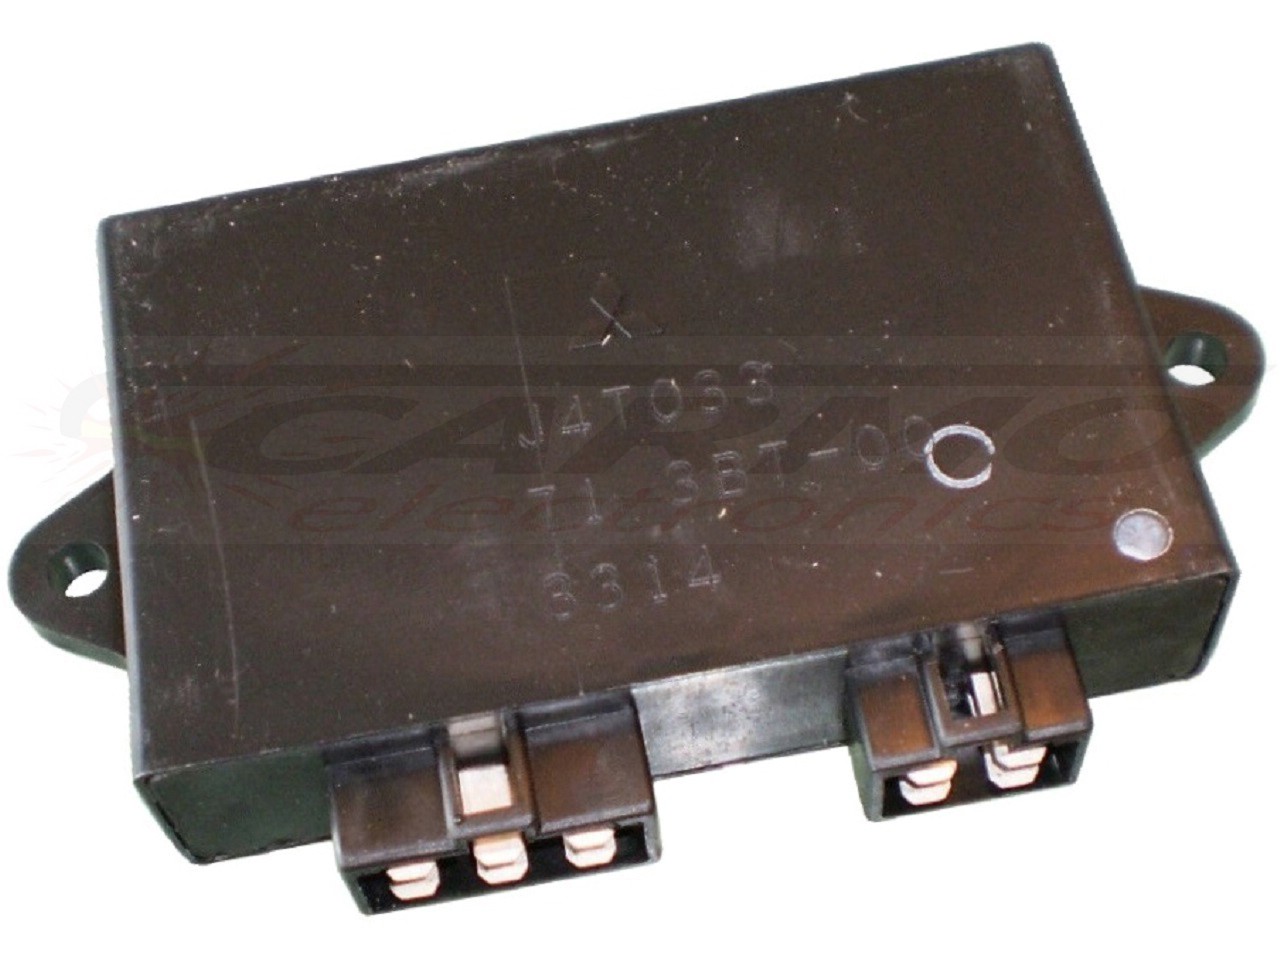 XV535 Virago TCI CDI dispositif de commande boîte noire (J4T033, 71 3BT-00)